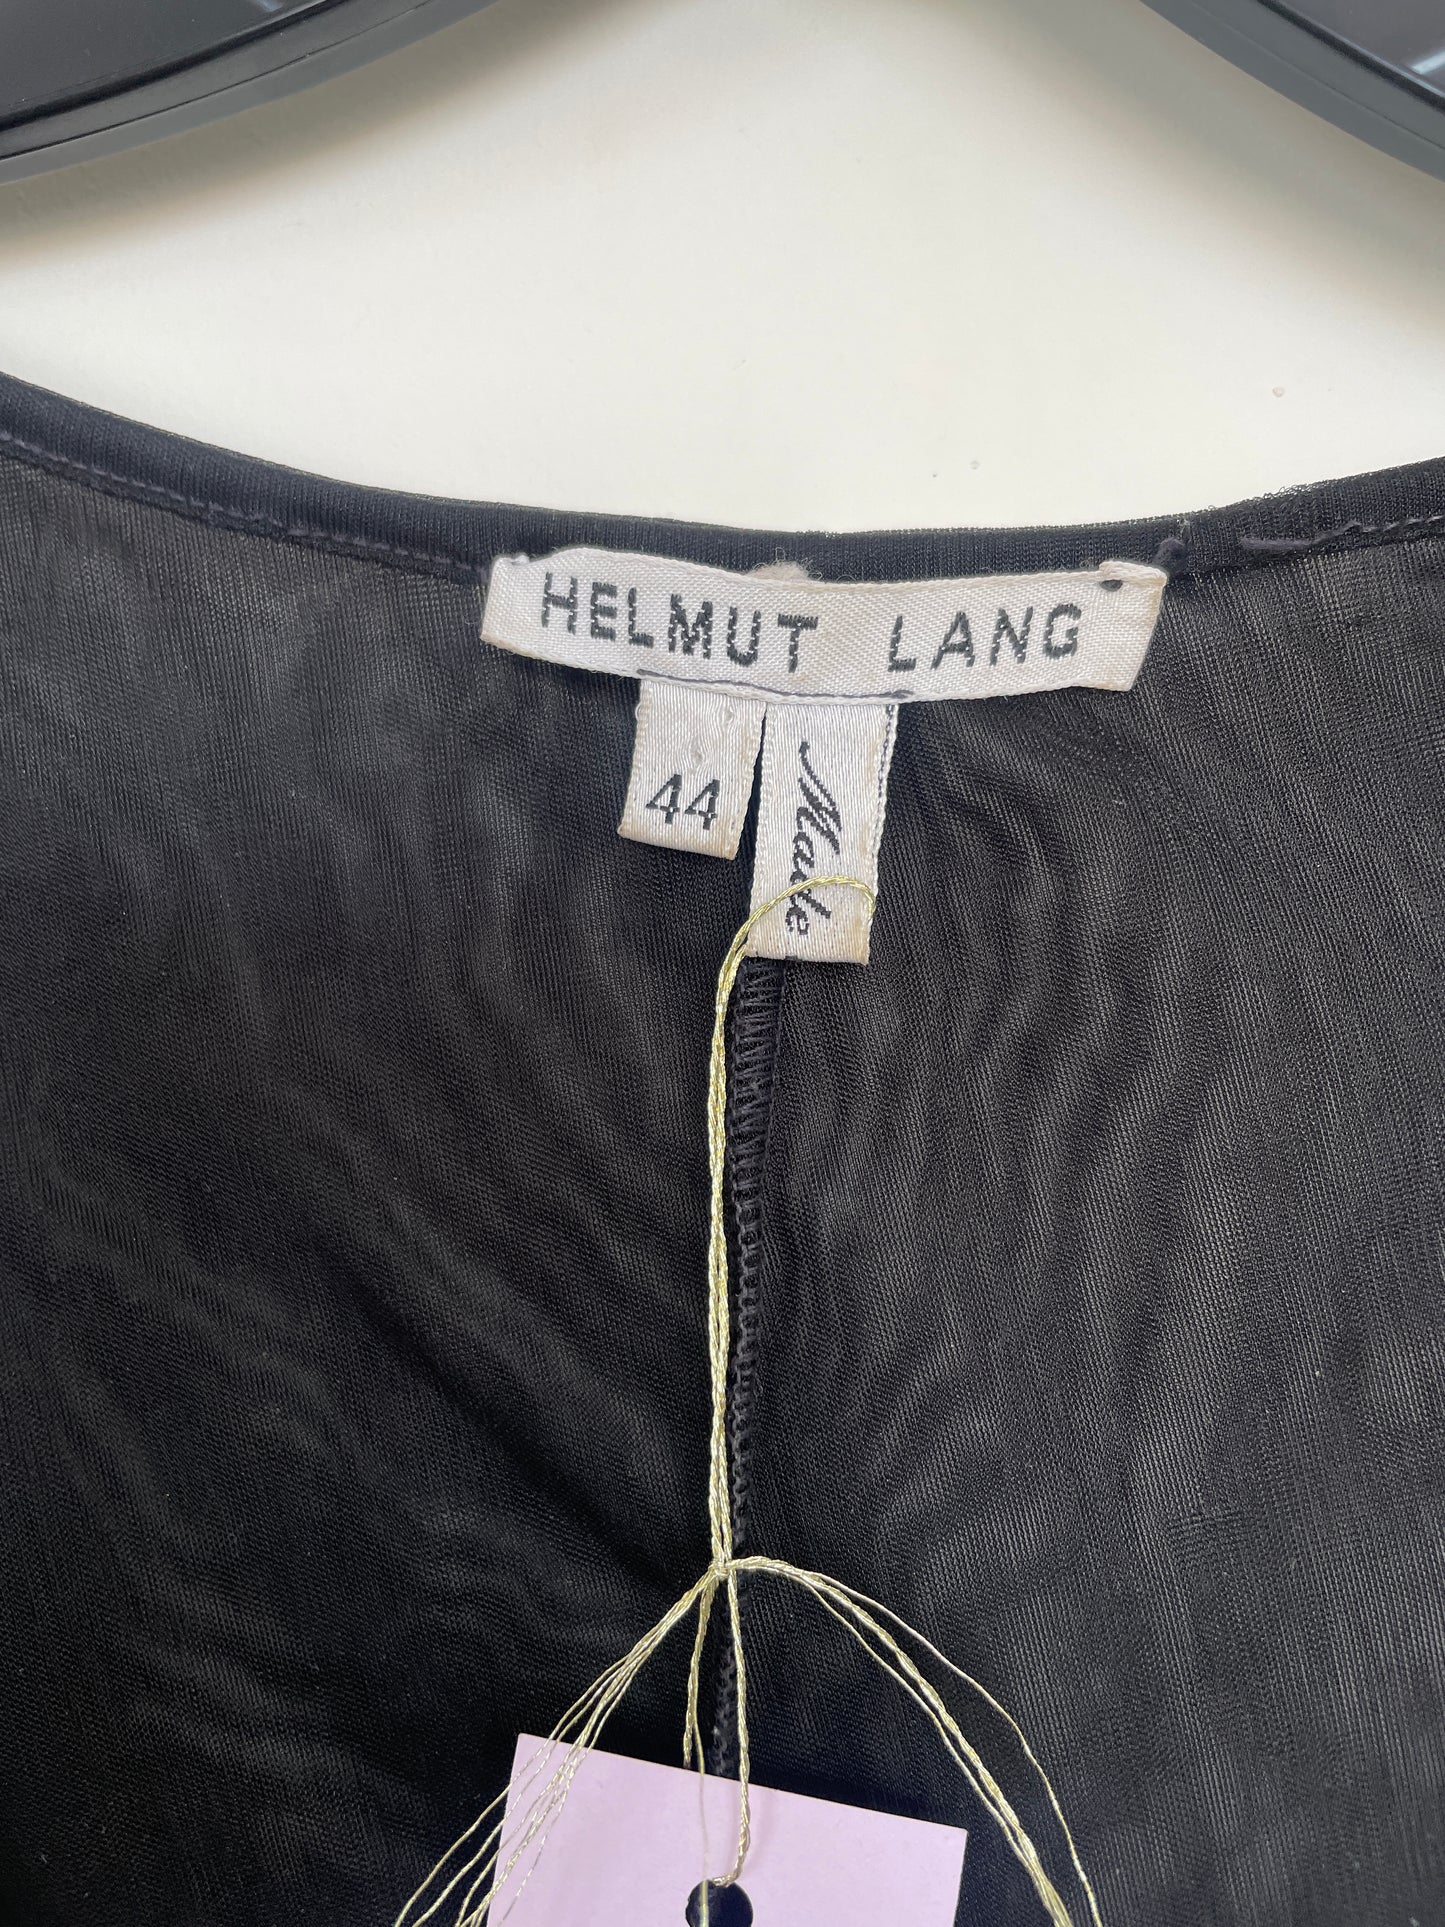 Helmut Lang 90's black mesh jumpsuit